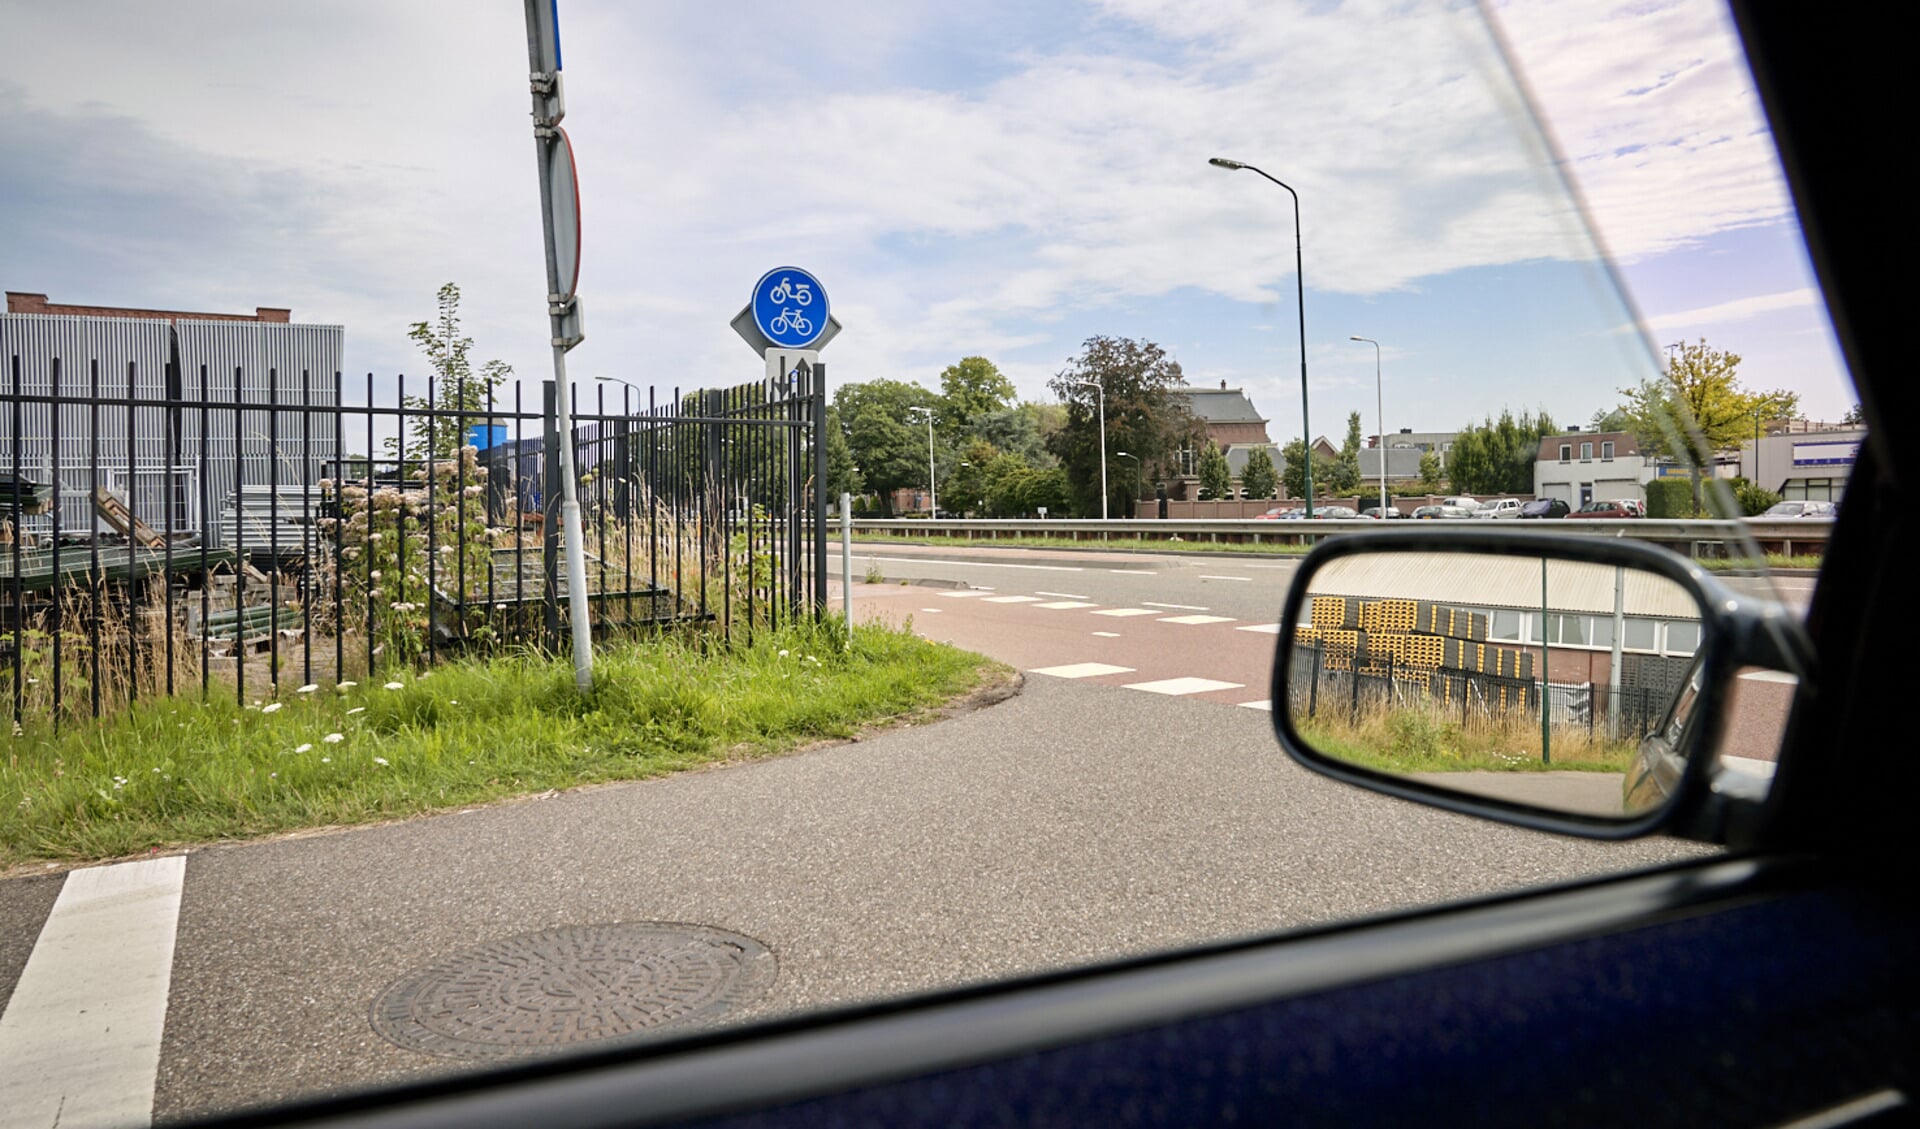 Het zicht van een afdraaiende auto vanuit de Wellestraat richting de Bosscheweg. Voordat de auto de weg op kan, moet het eerst nog voorbij een fietspad, dat beperkt zichtbaar is door de hekwerken aan beide zijden